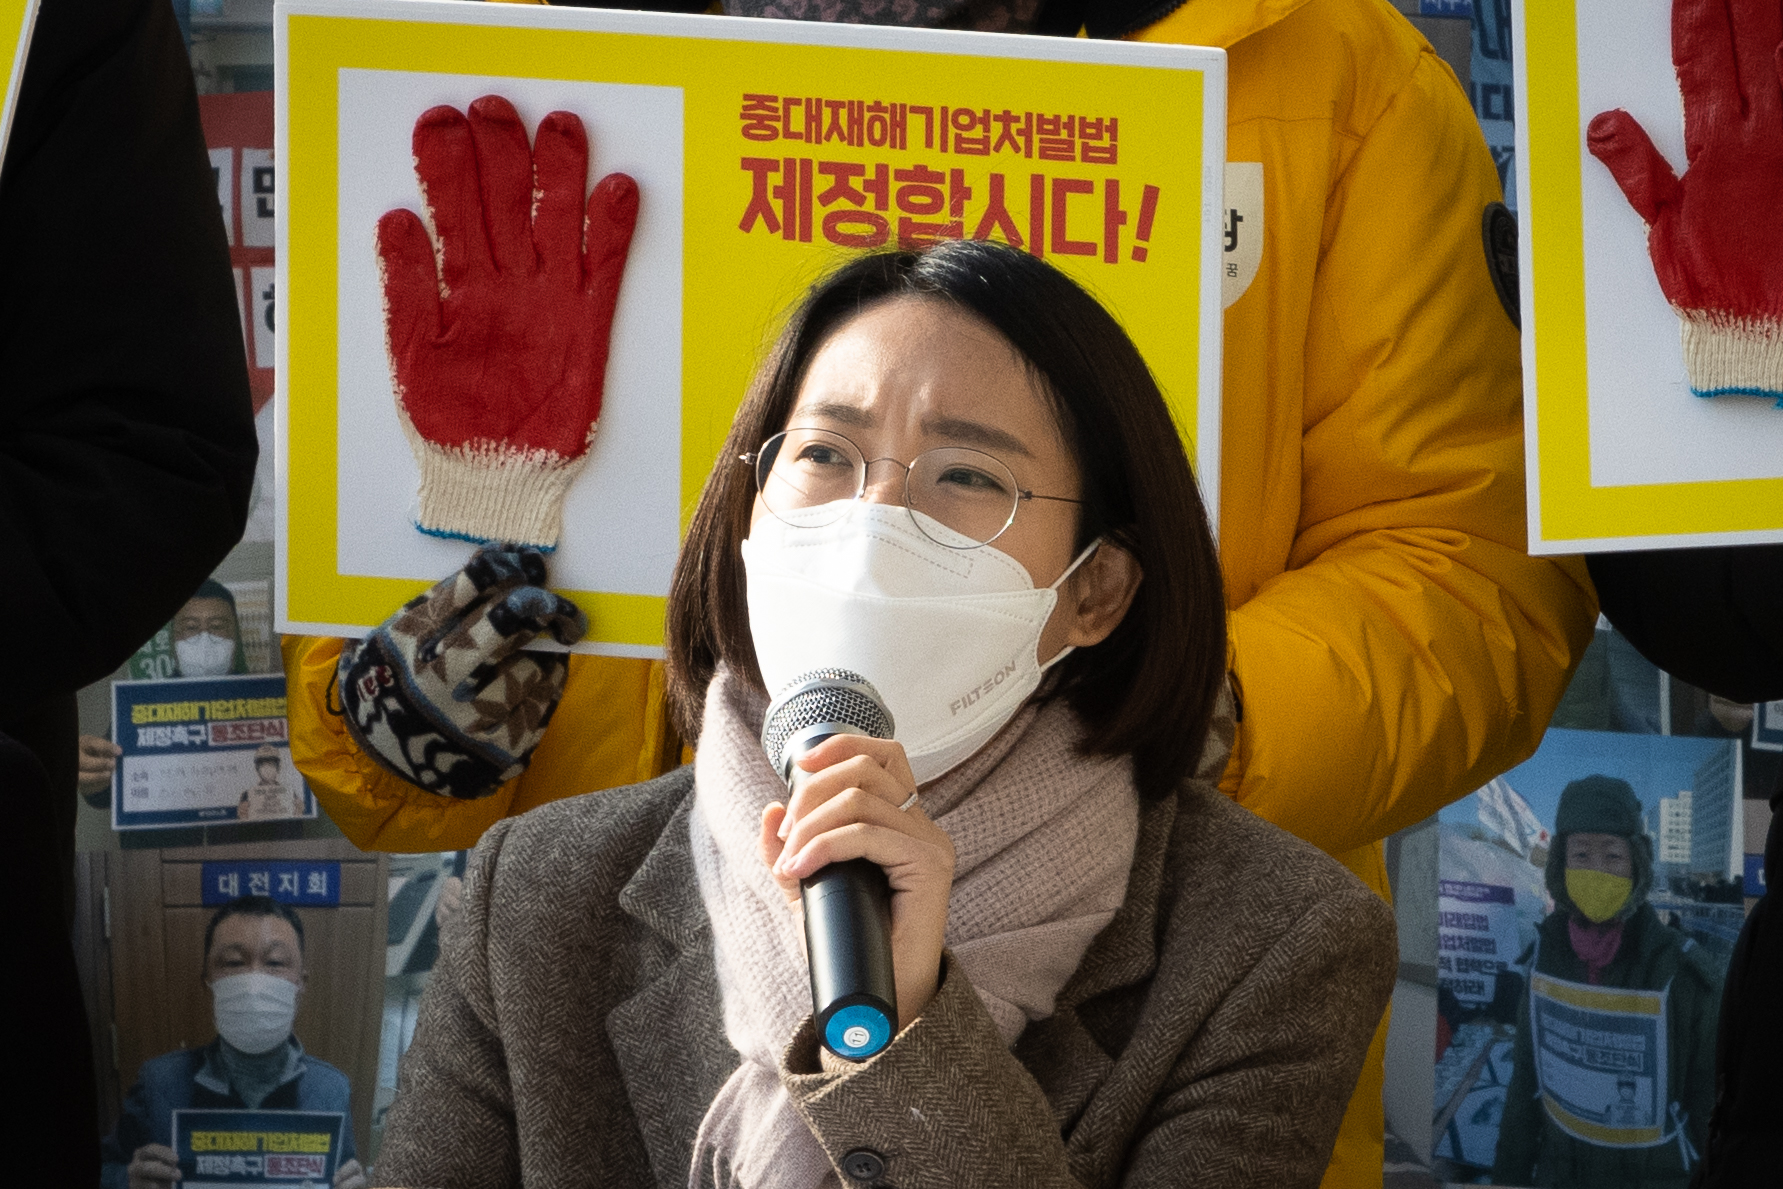 발언하고 있는 장혜영 의원의 사진. 그의 뒤에는 작업용 목장갑을 붙인 "중대재해기업처벌법 제정합시다!" 손피켓이 보인다.